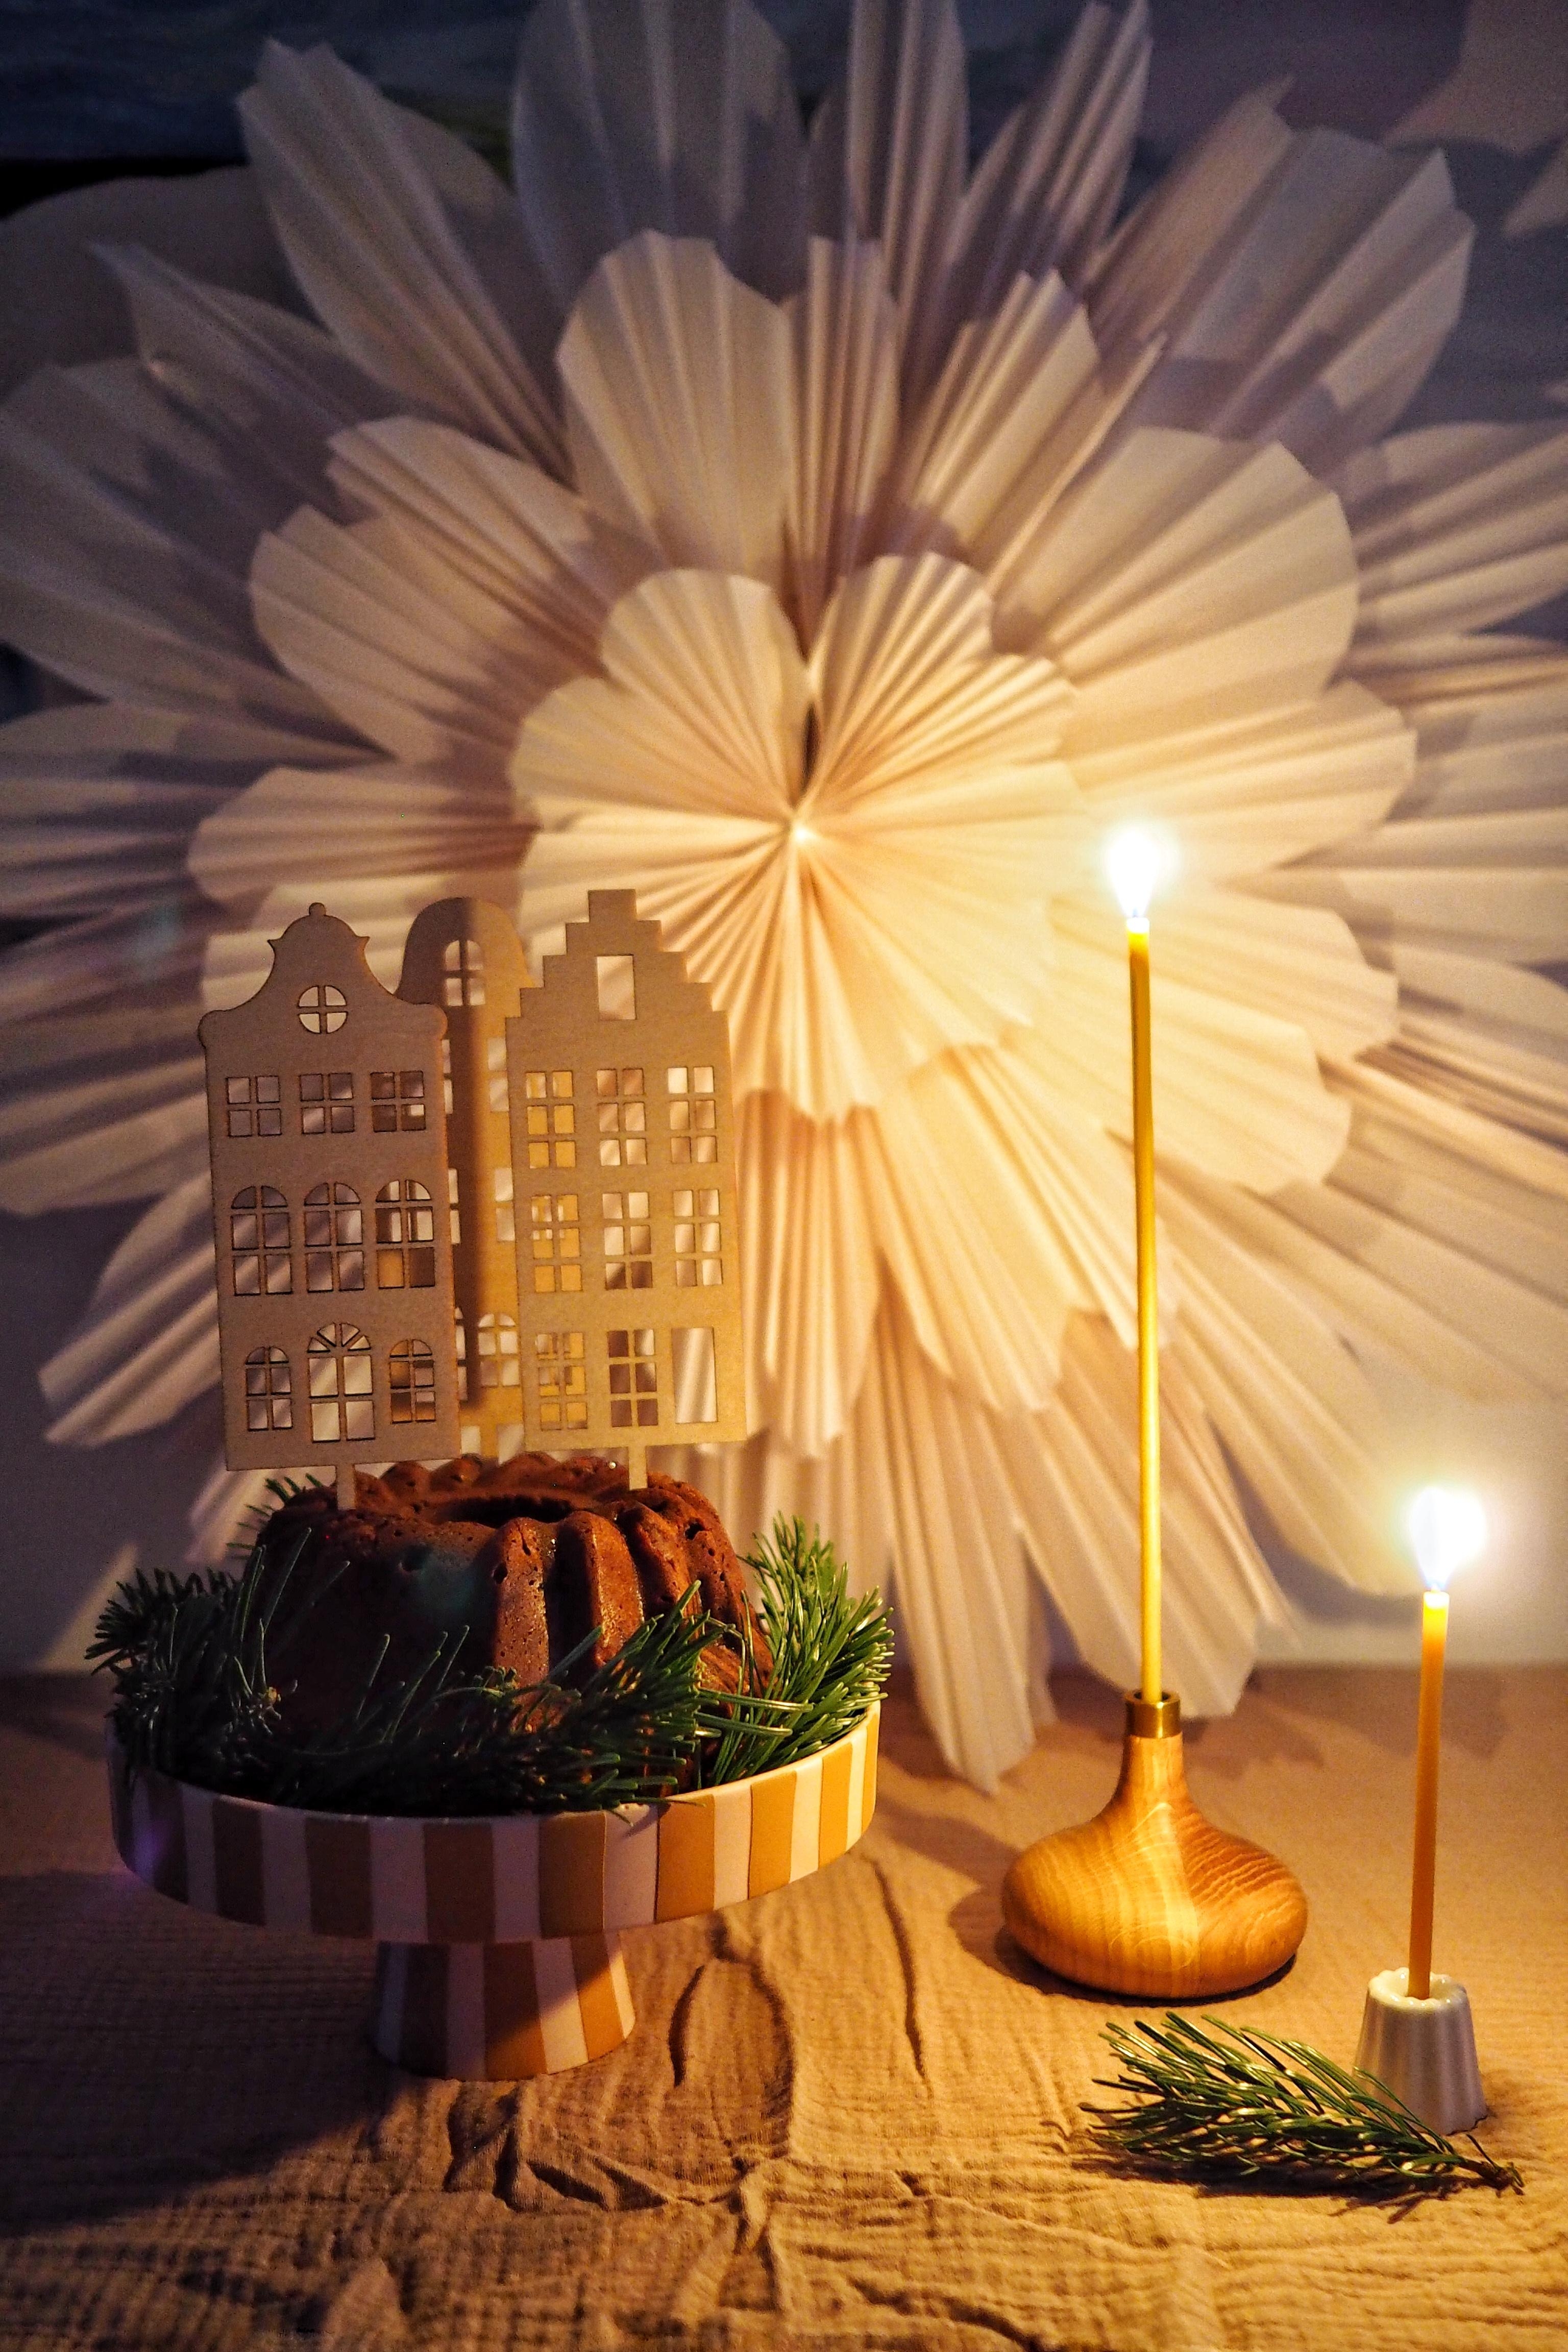 Kuchen bei Kerzenschein.
#kerzenschein #esstisch #kerzenhalter